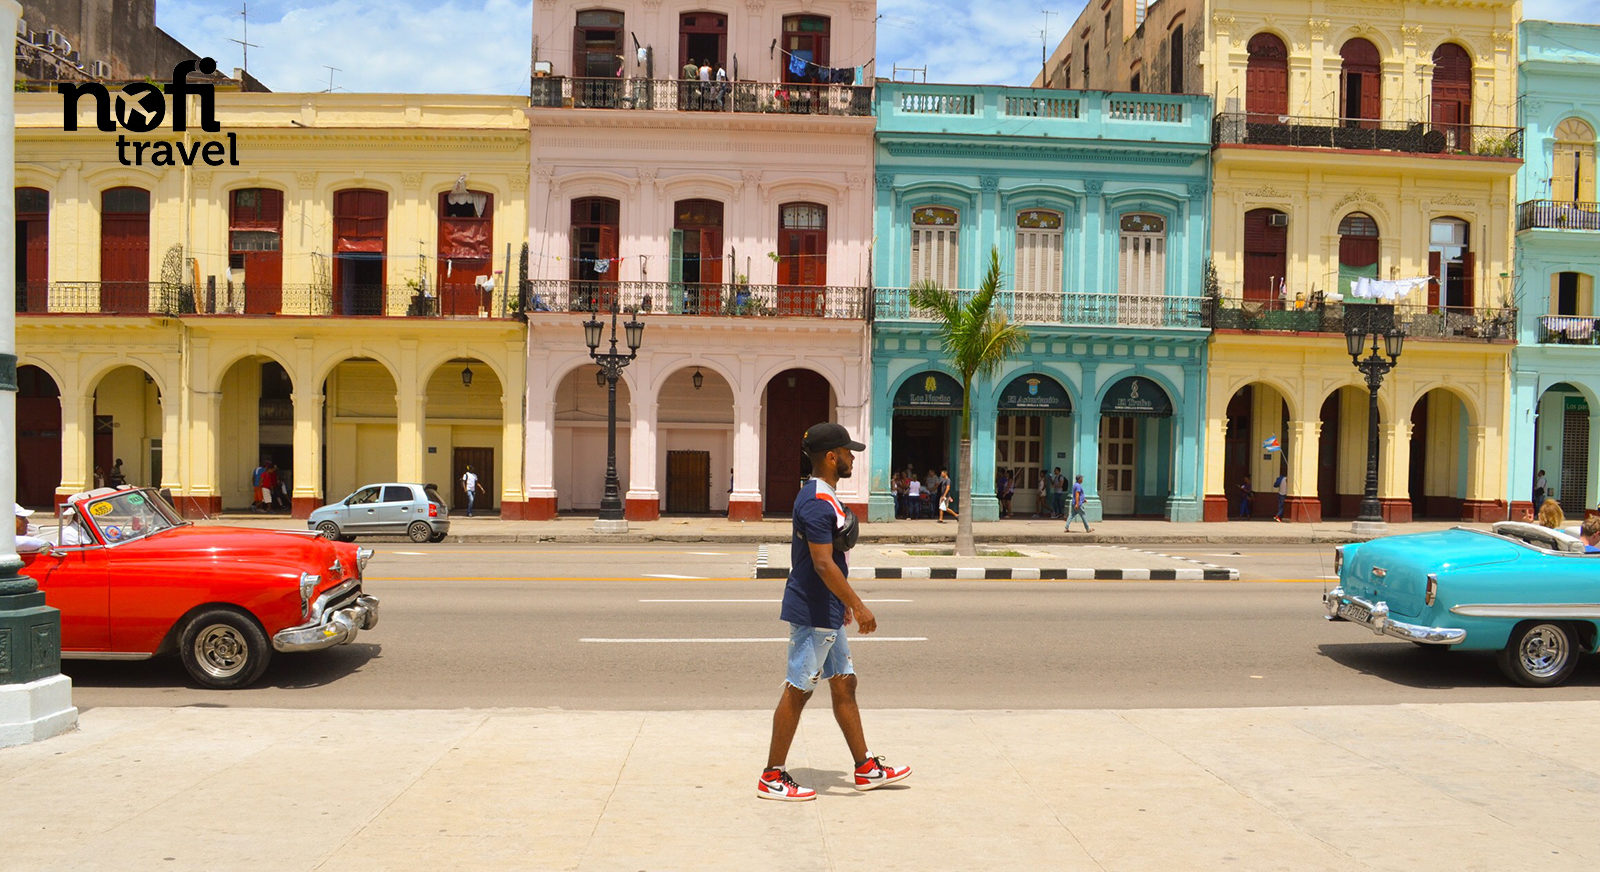 Nofi TRAVEL #4 [CUBA] étape 1: La Havane, la “ville aux Mille Colonnes”